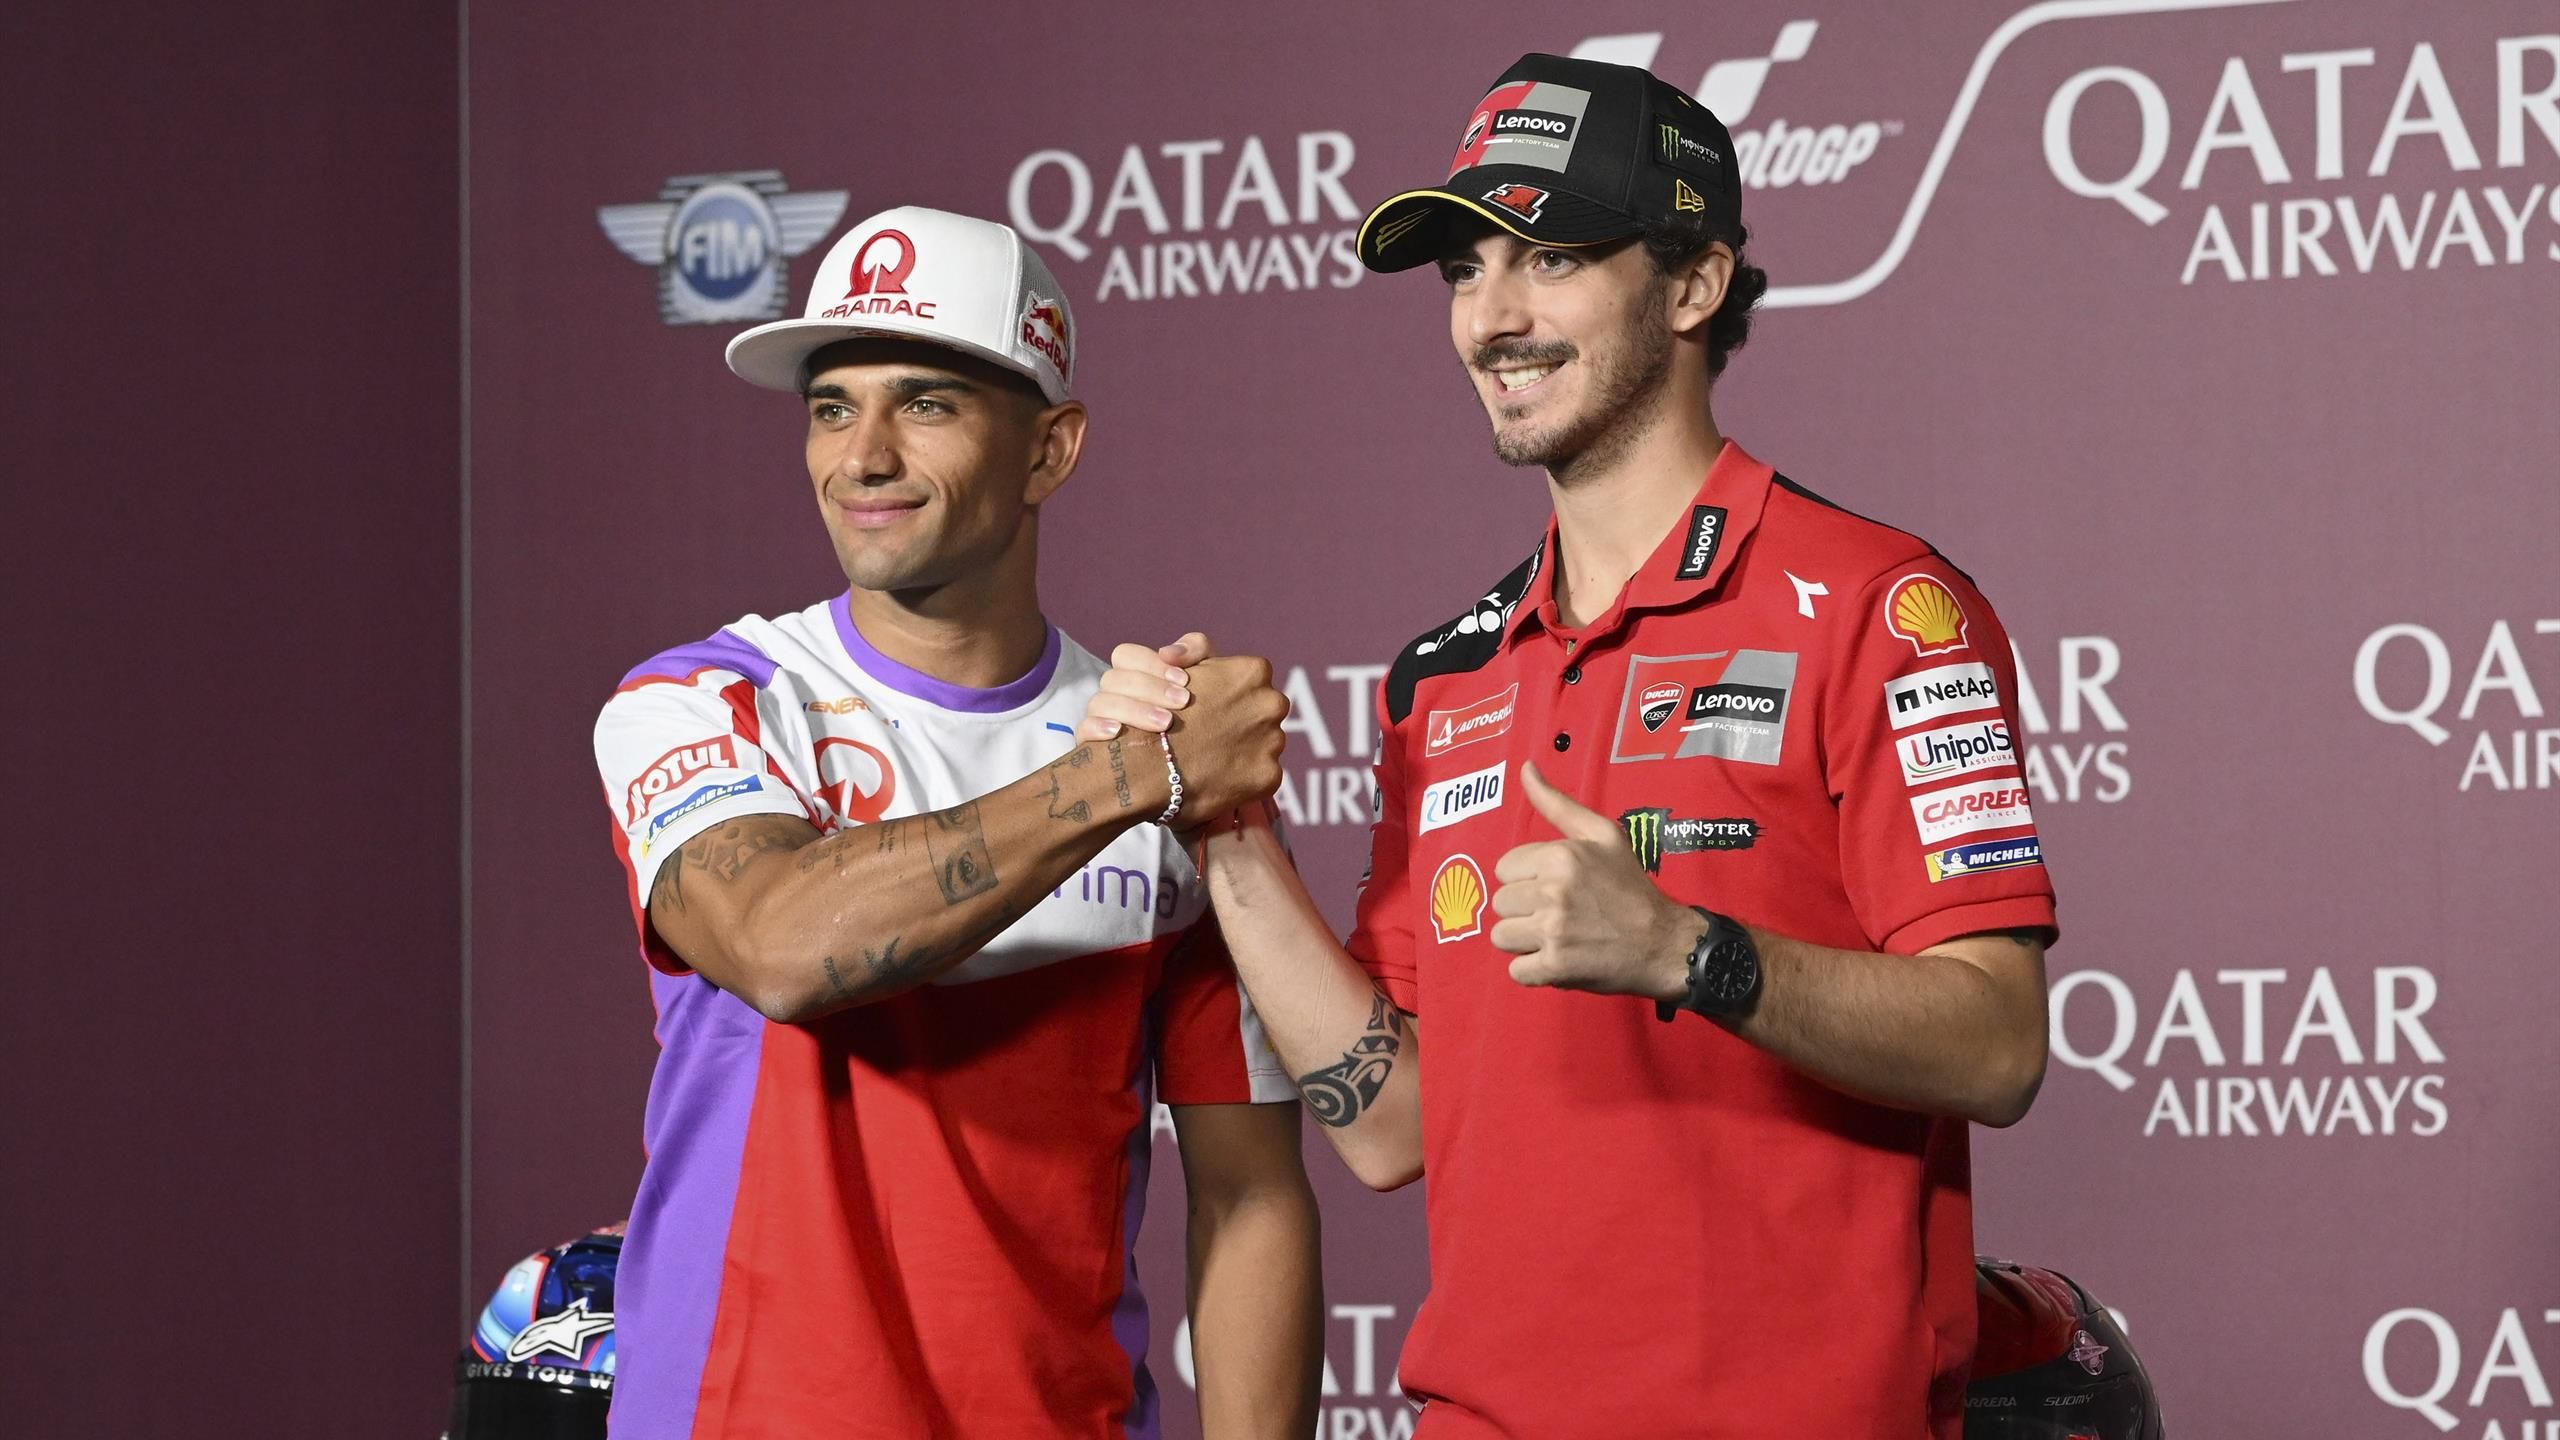 Gran Premio de Qatar – Francesco Bagnaia satisfecho: “La moto funciona muy bien”, Jorge Martín enfadado: “Un día tonto”